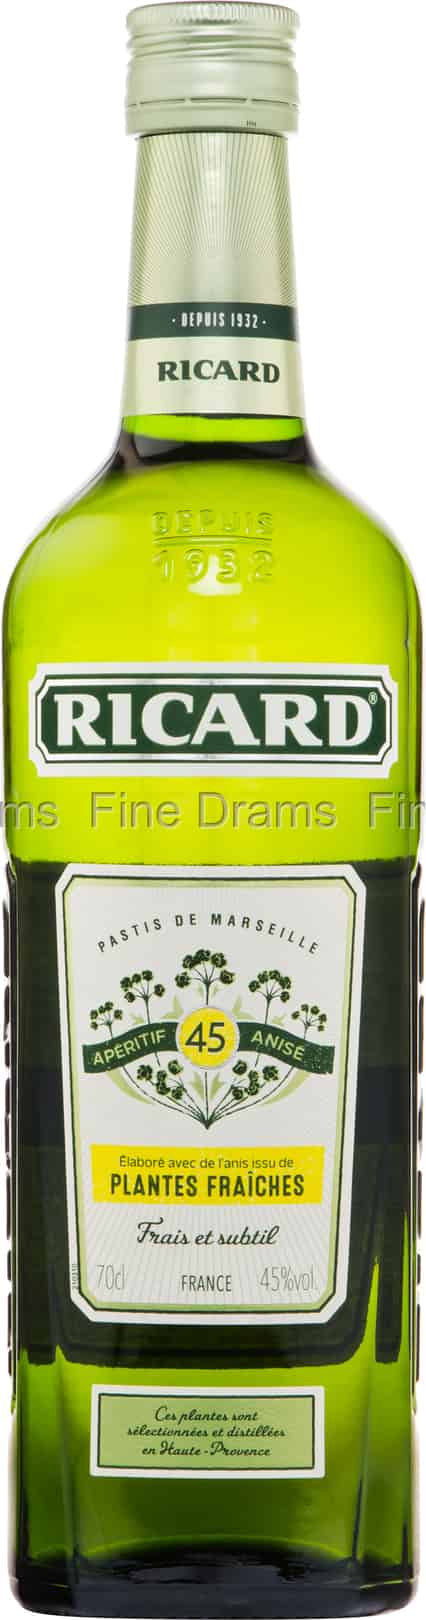 Pastis aux plantes fraîches - Ricard - 70 cl